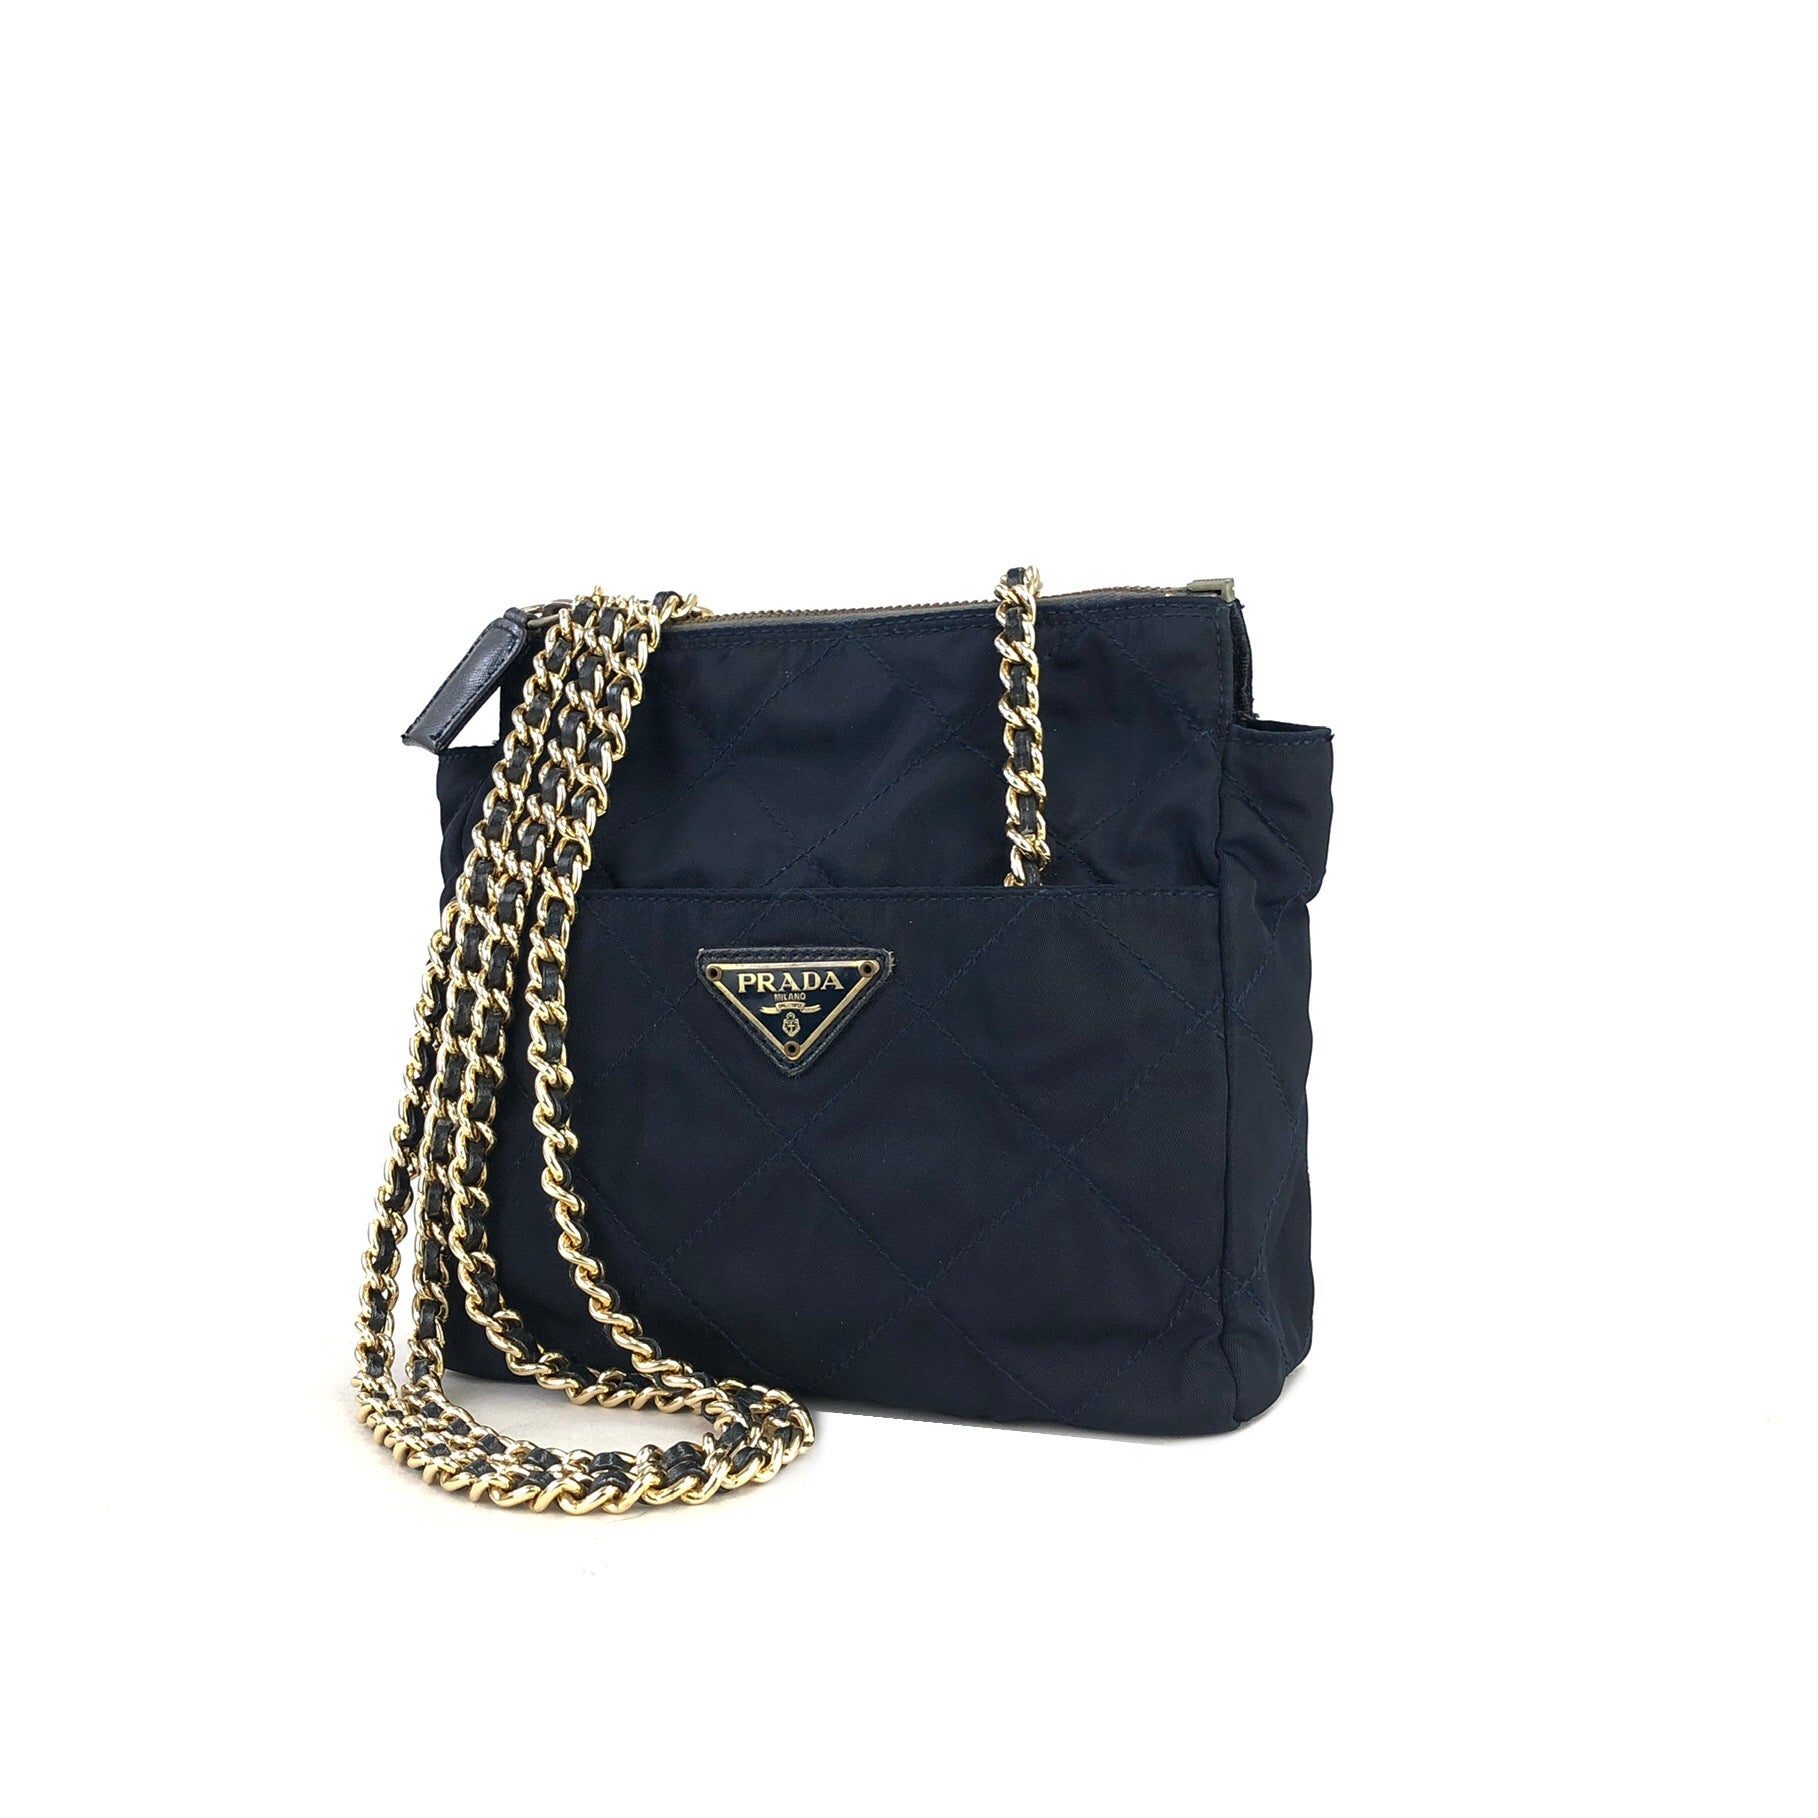 Prada Symbol Embroidery Fabric Handbag Shoulder 2Way 1Ba354 Navy F122